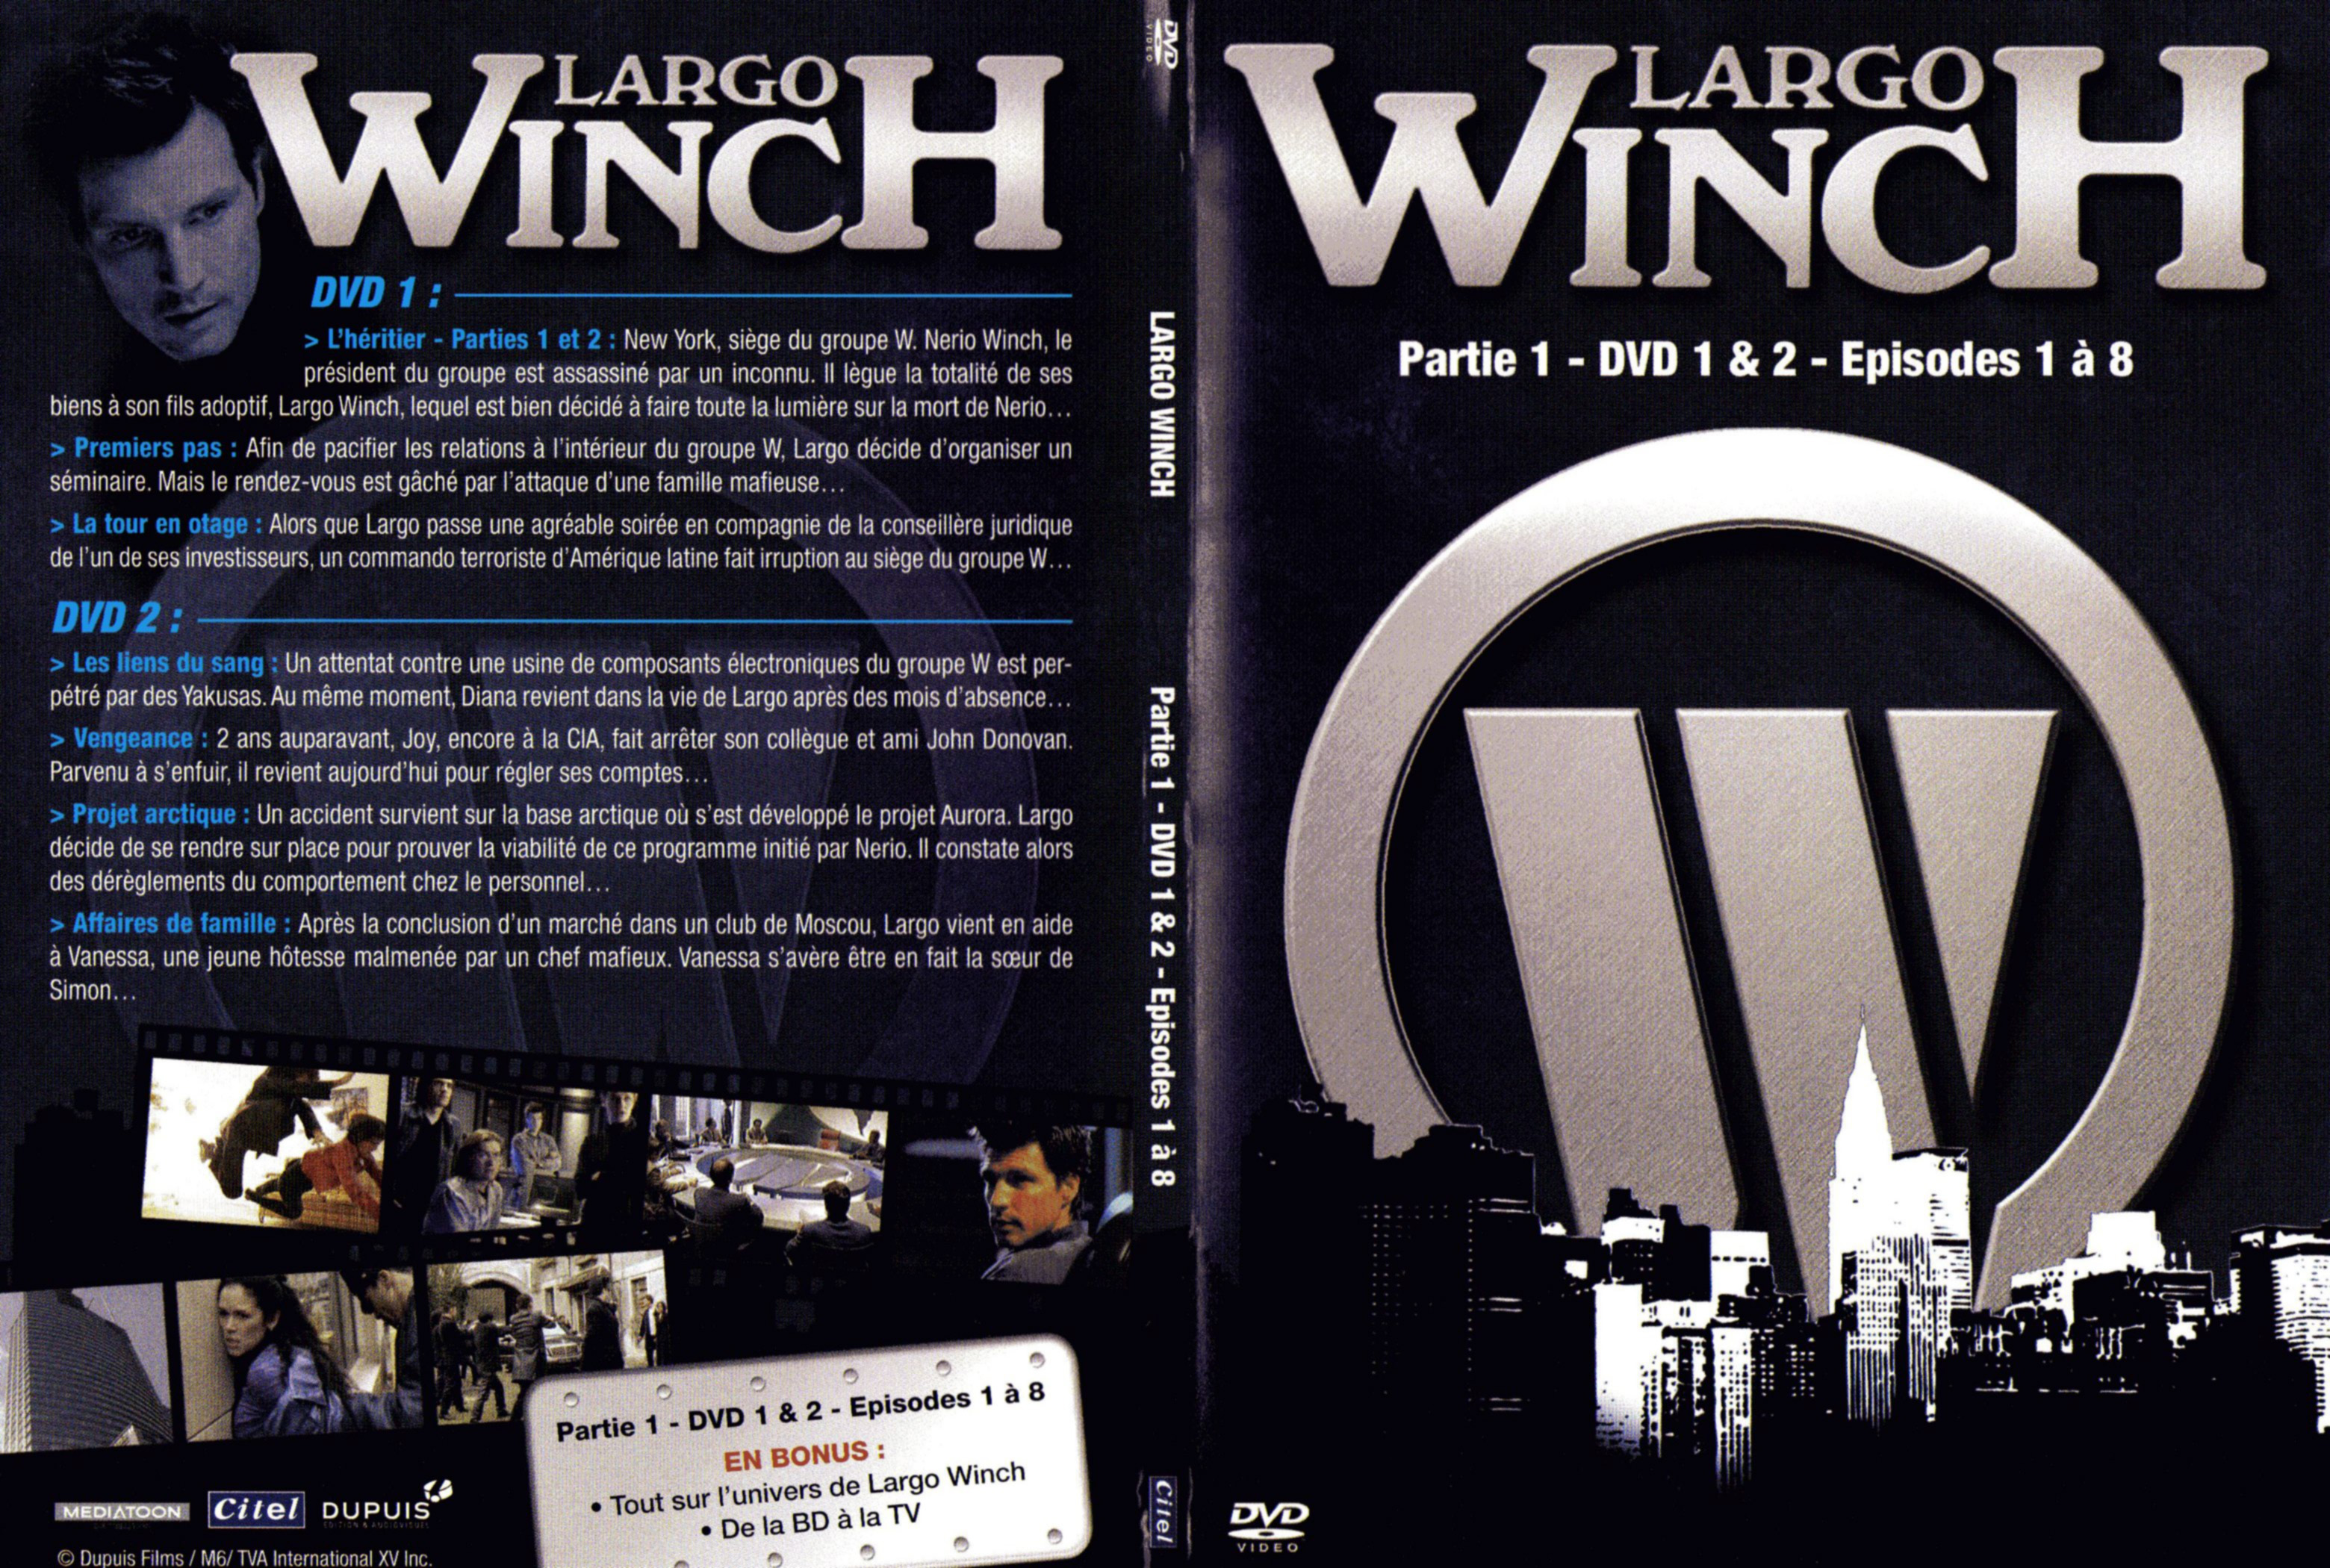 Jaquette DVD Largo Winch Partie 1 DVD 1